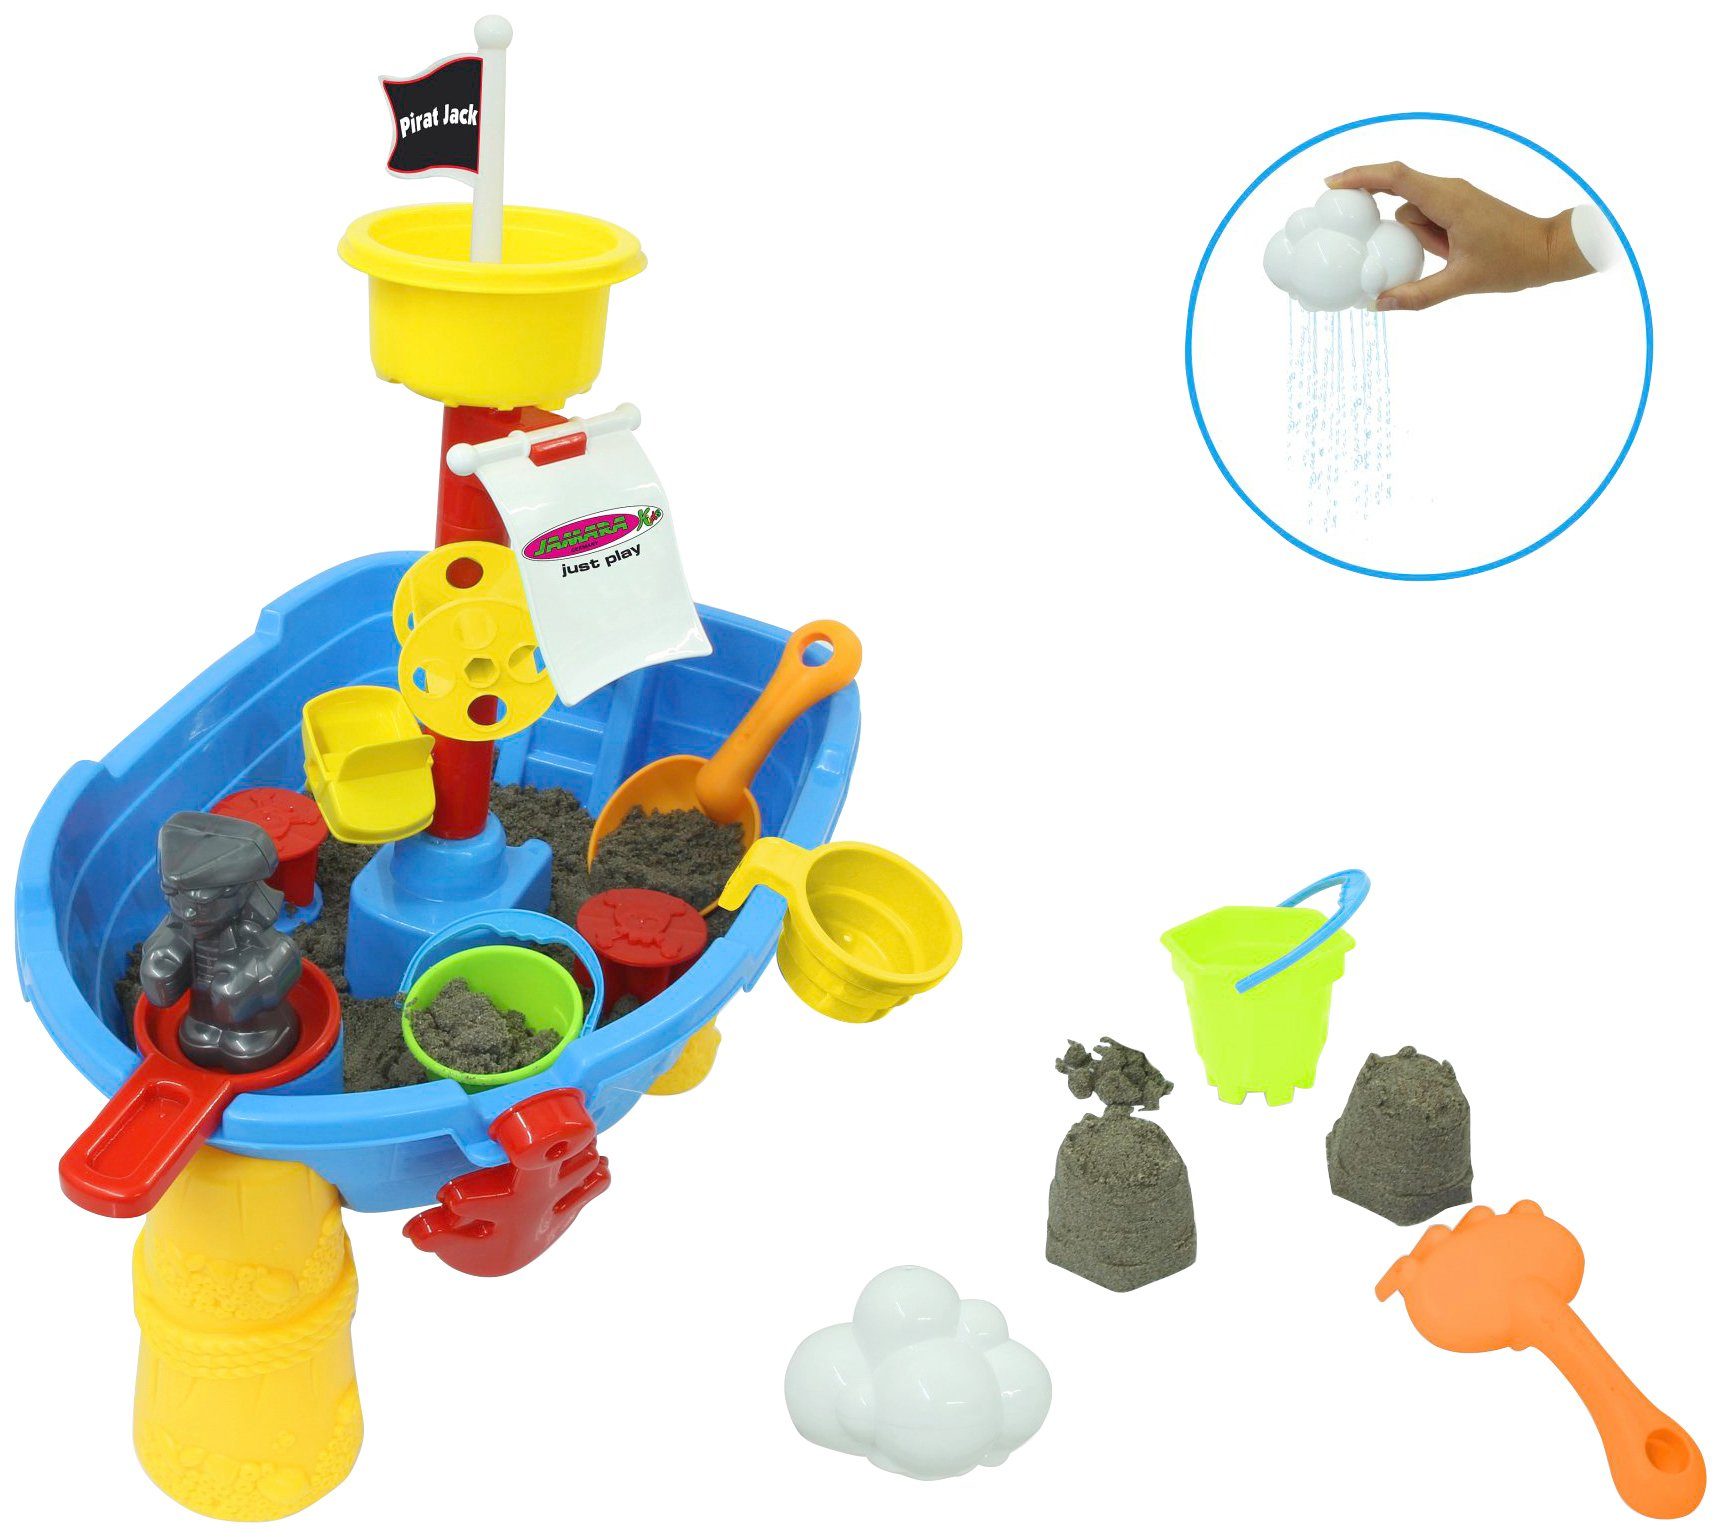 Jamara Wasserspieltisch Pirat Jack, für Kinder ab 2 Jahren, 21-teilig, BxLxH: 13x30x58 cm